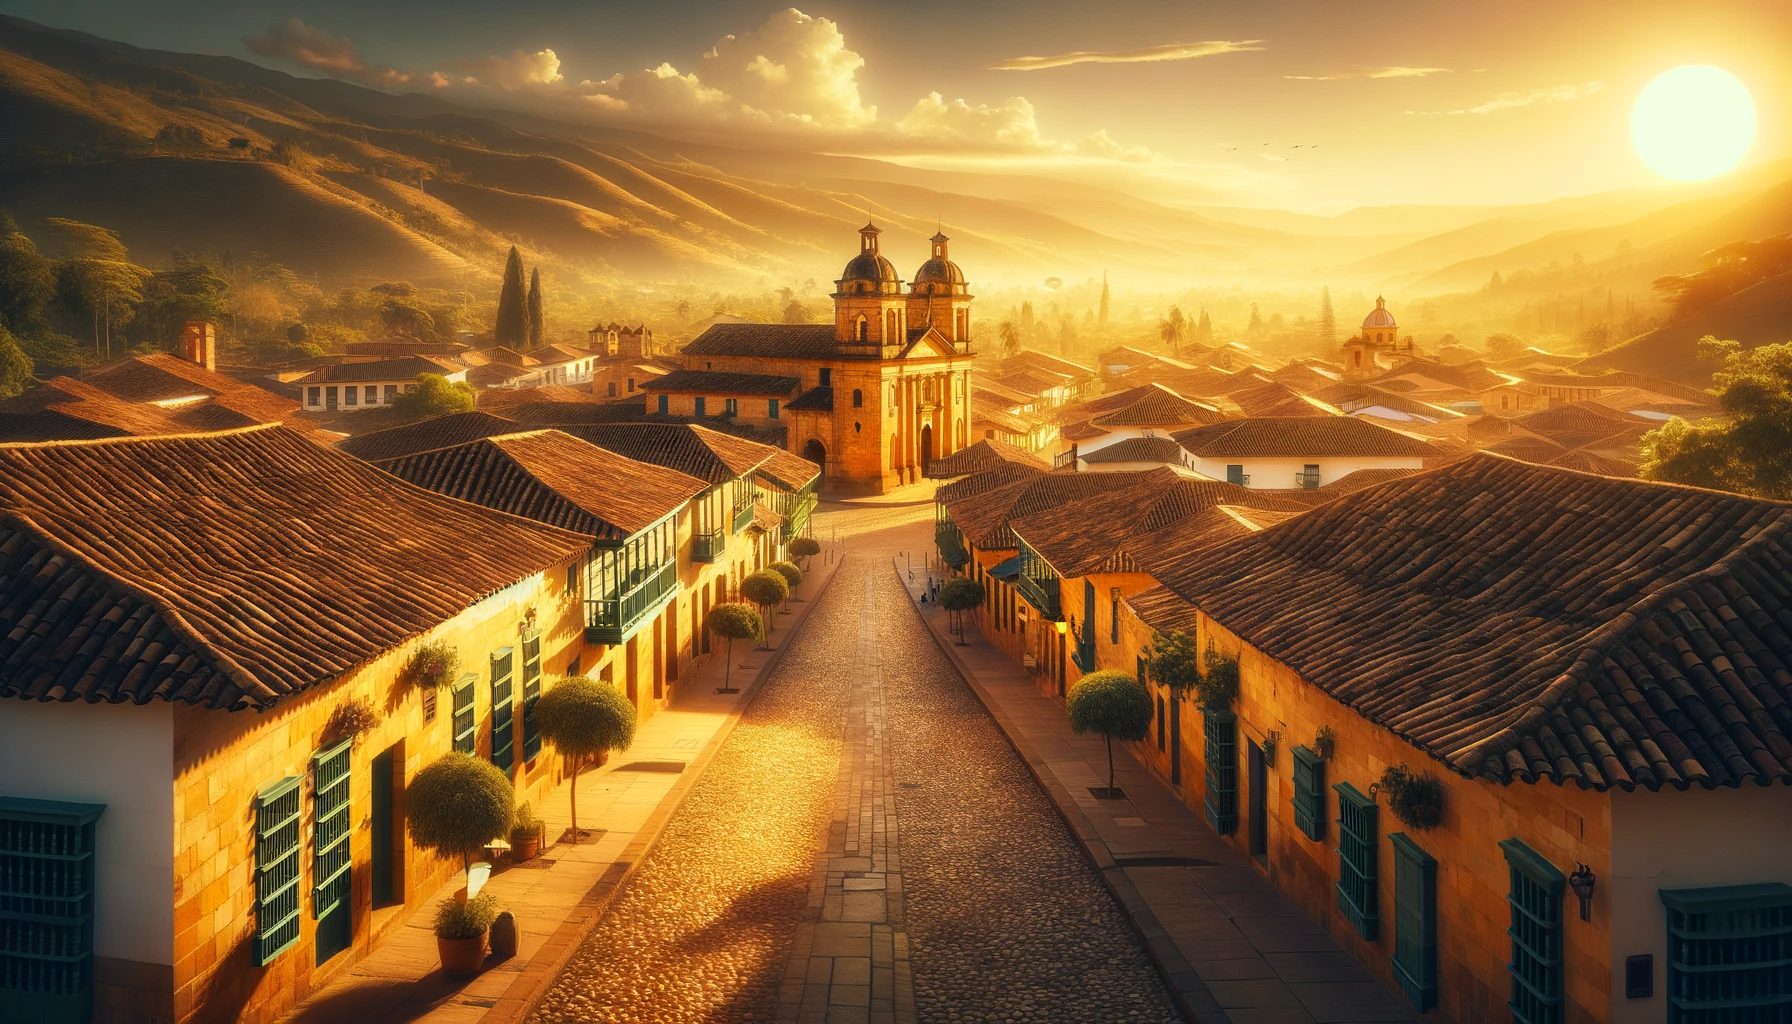 Ville coloniale au lever du soleil avec montagnes et rues pavées.